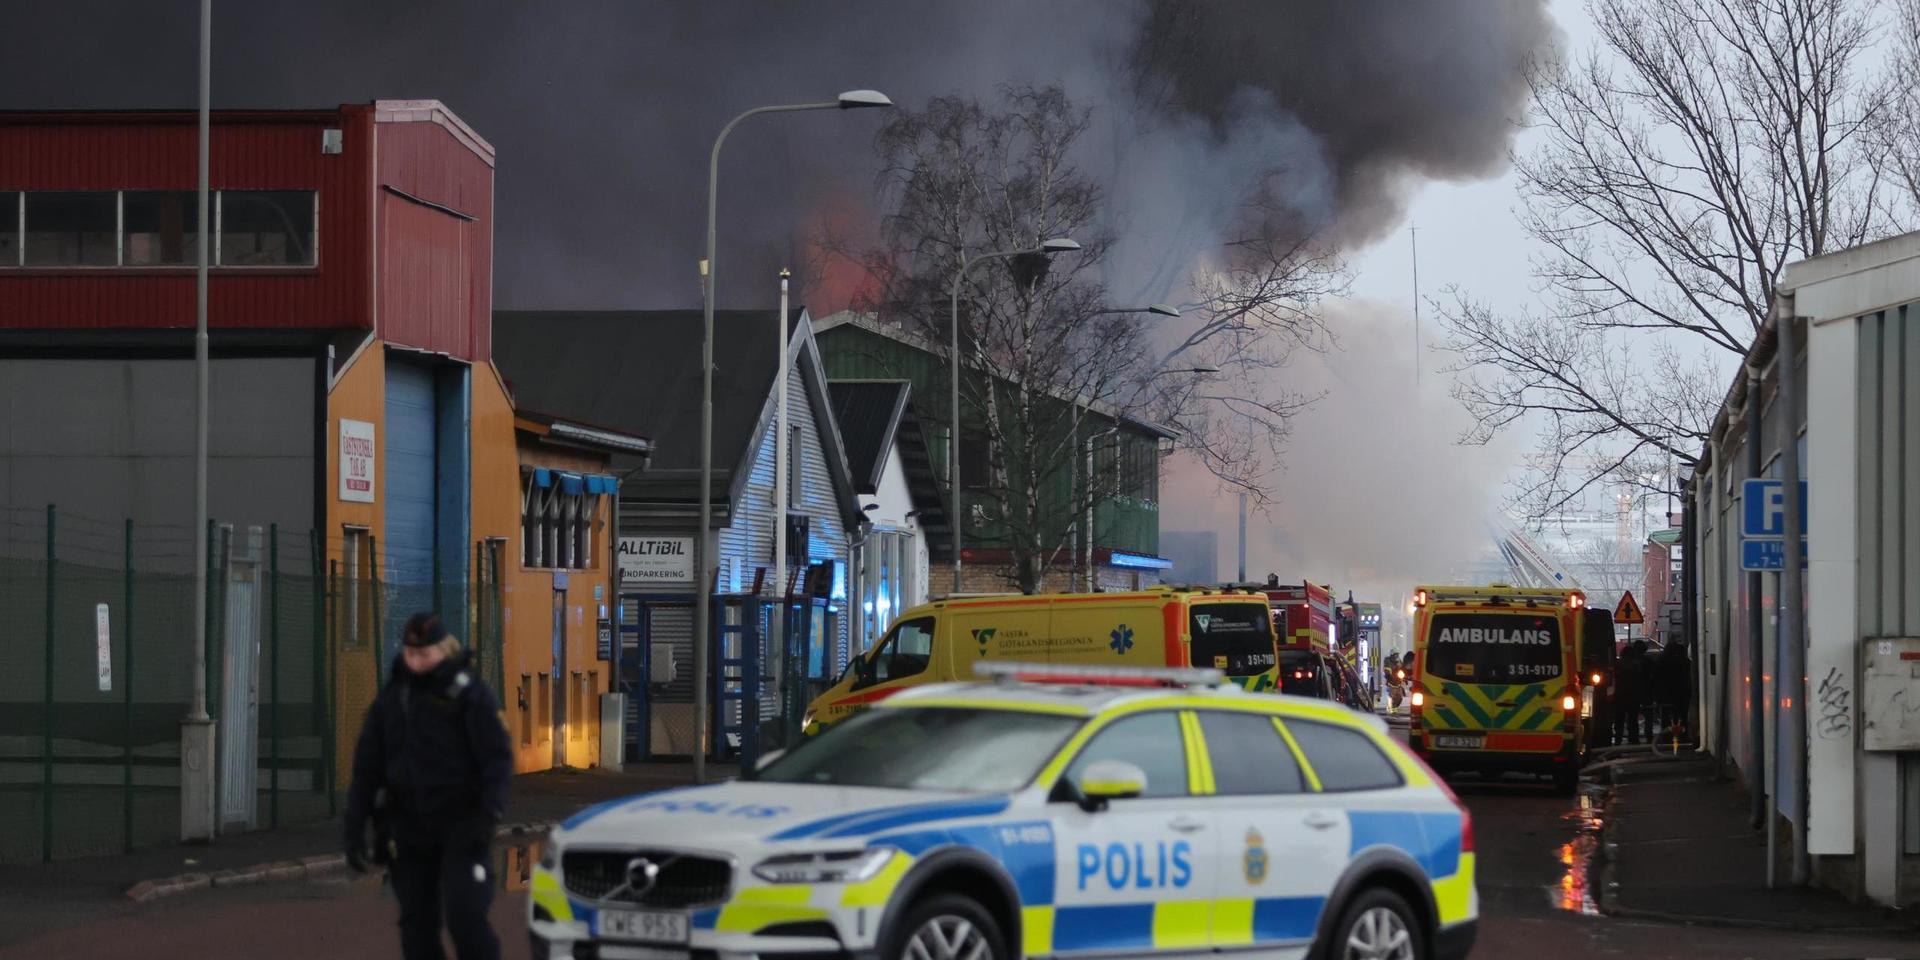 En större lagerlokal vid industriområdet Ringön på Hisingen i Göteborg brinner. Rökutvecklingen är kraftig.